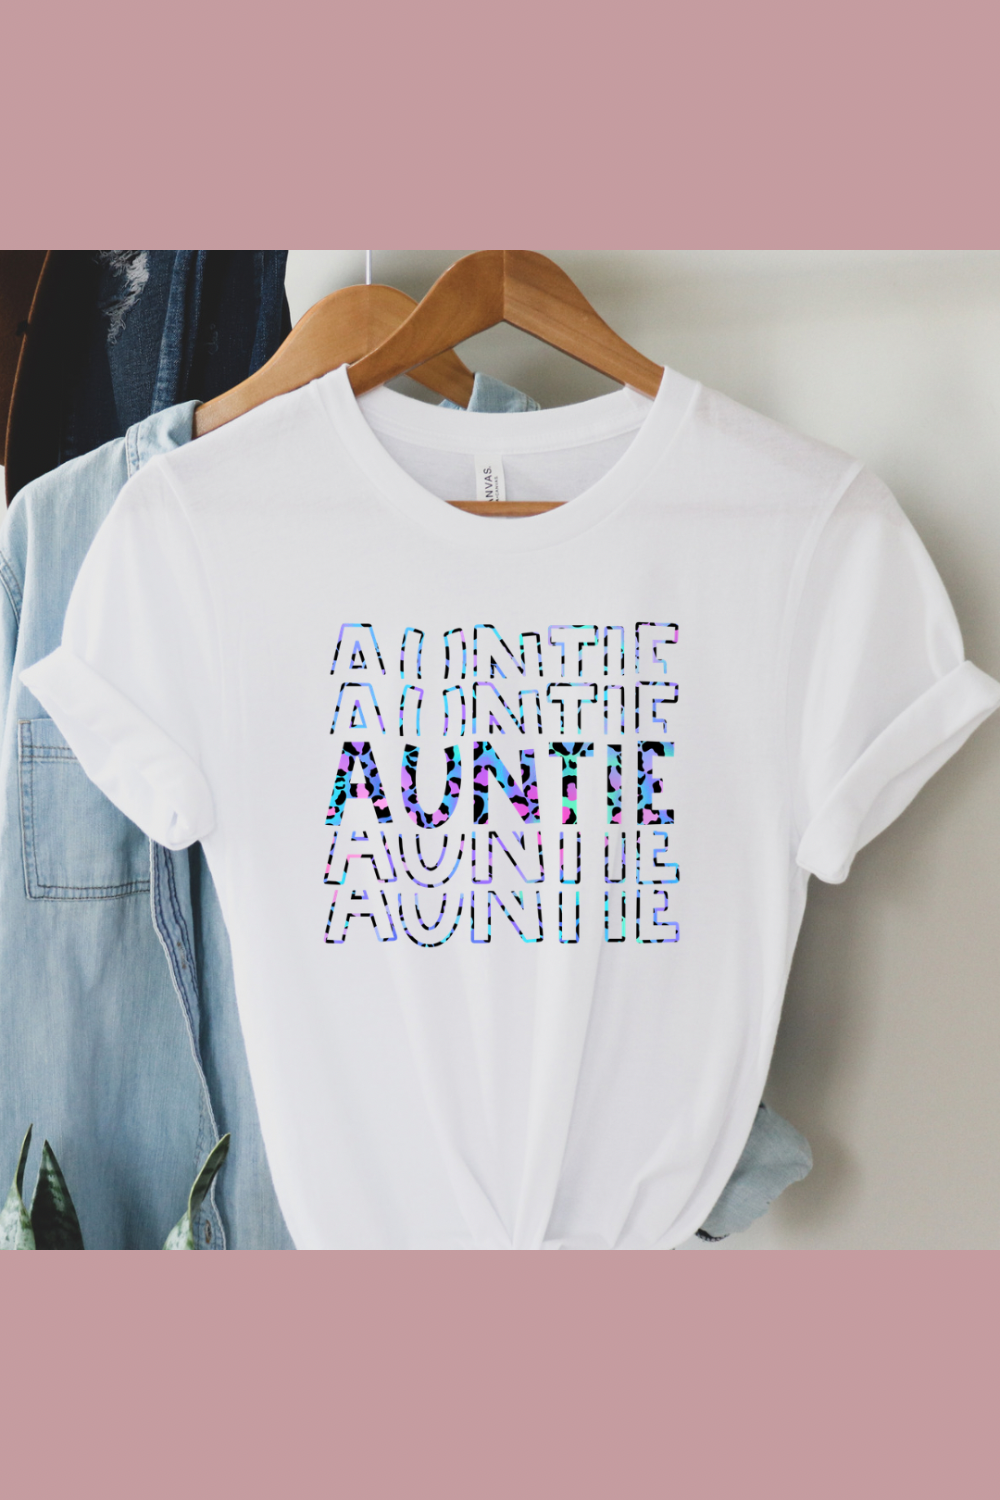 Auntie/mini